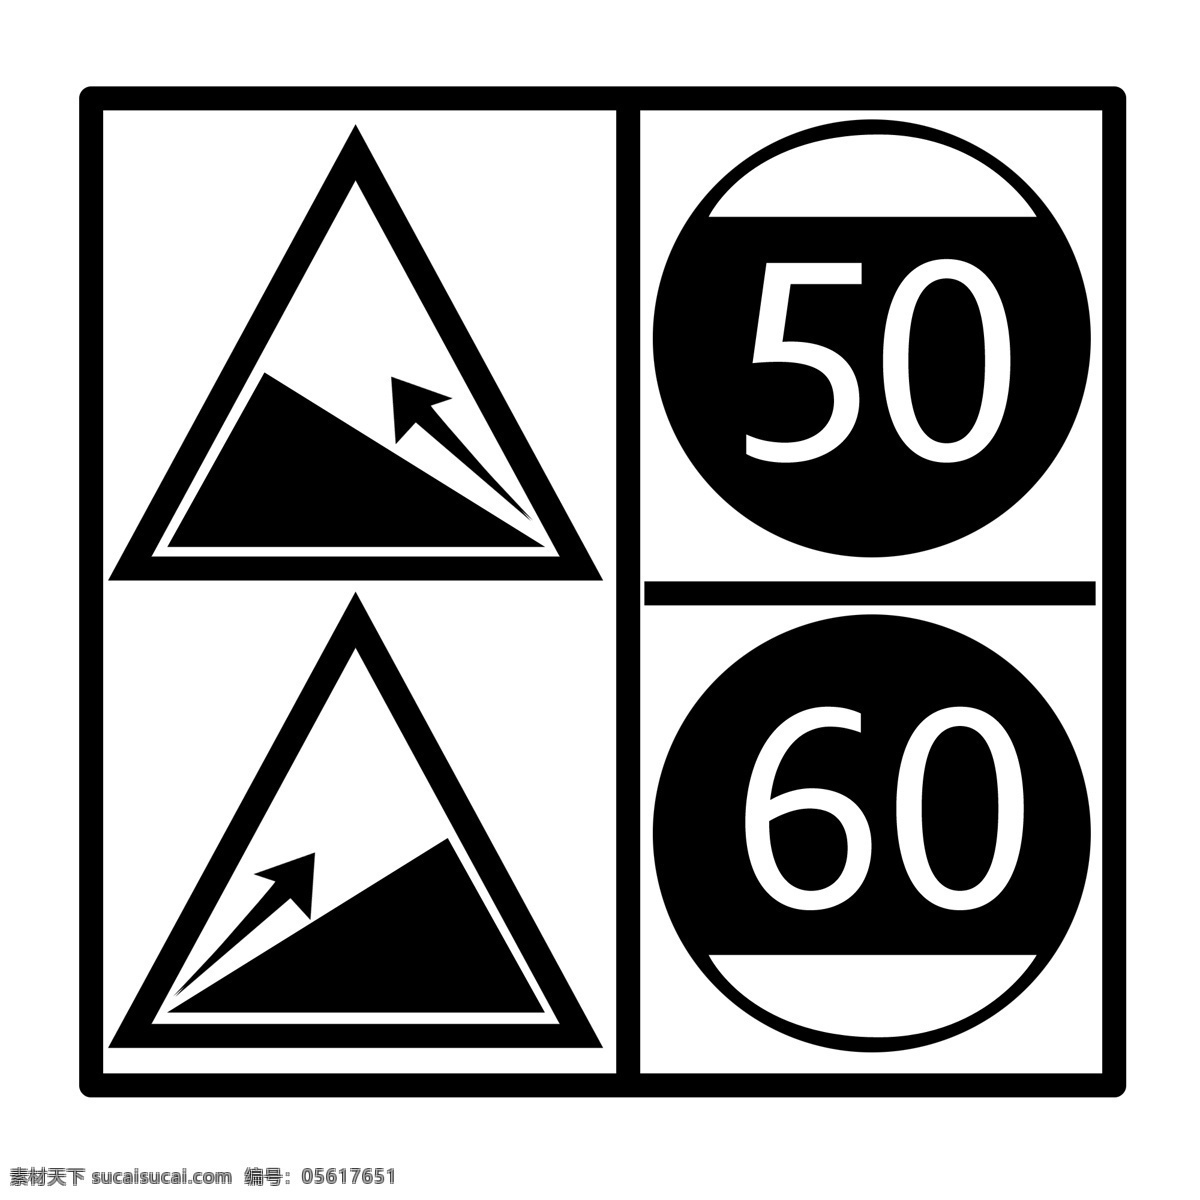 黑色 限速 通行 标志 黑色标志牌 交通标志插画 路标 交通 城市交通 禁止标志 黑色限速 通行标志